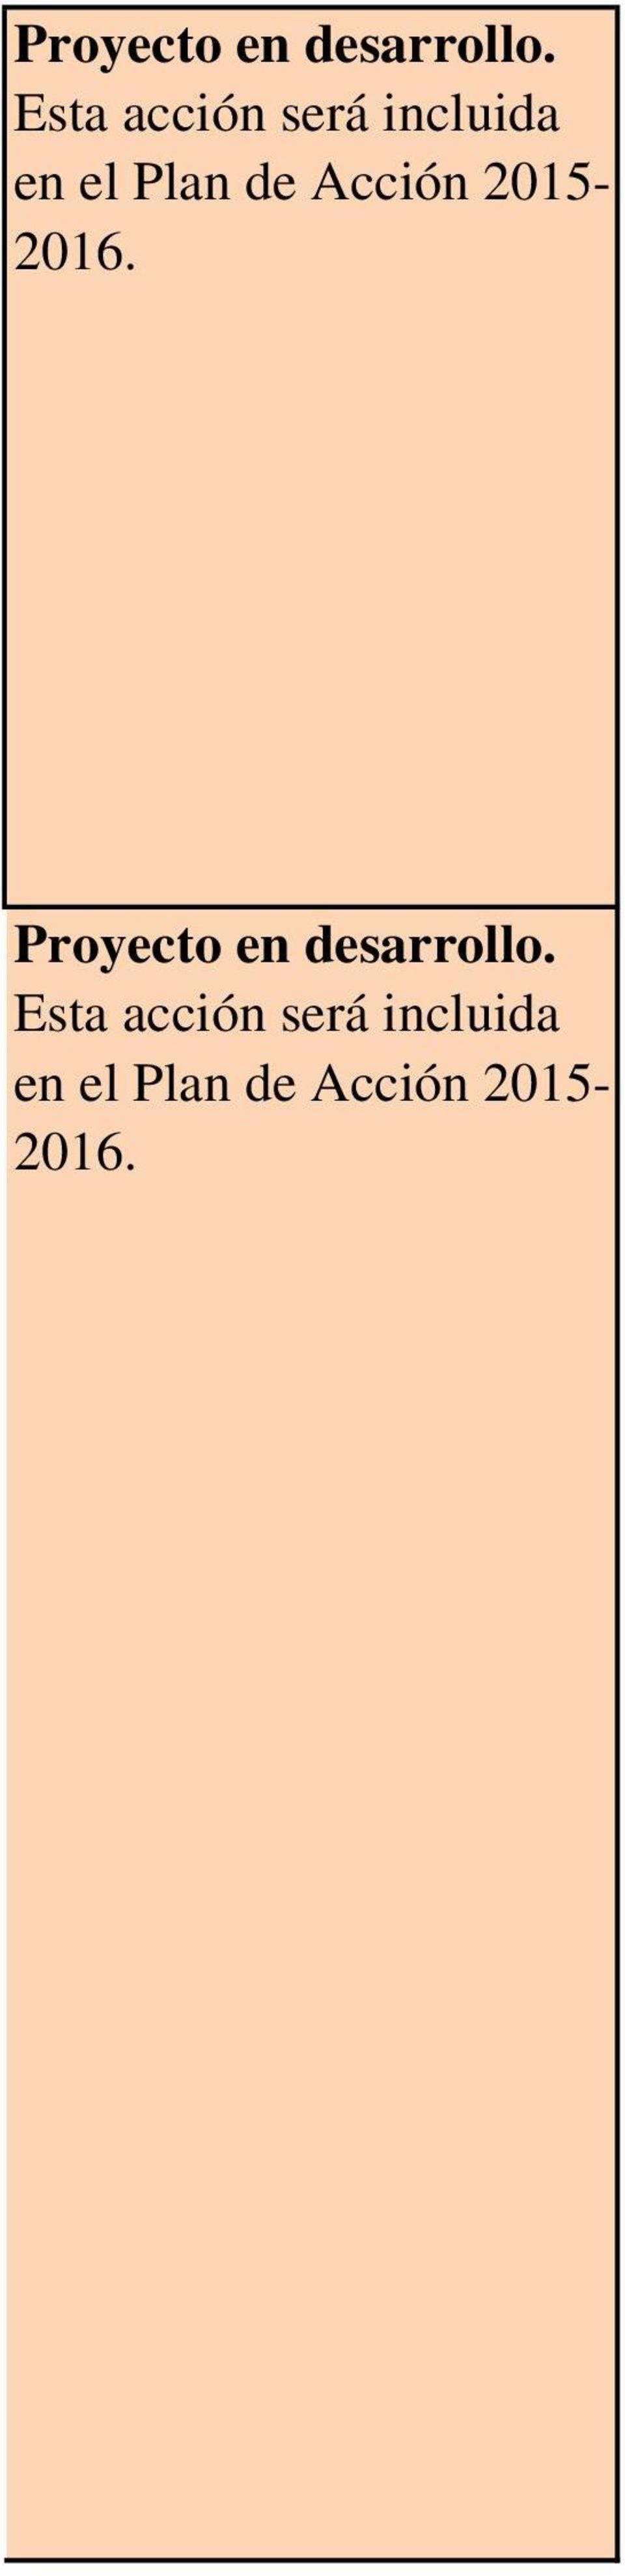 Acción 2015-2016.   Acción 2015-2016.